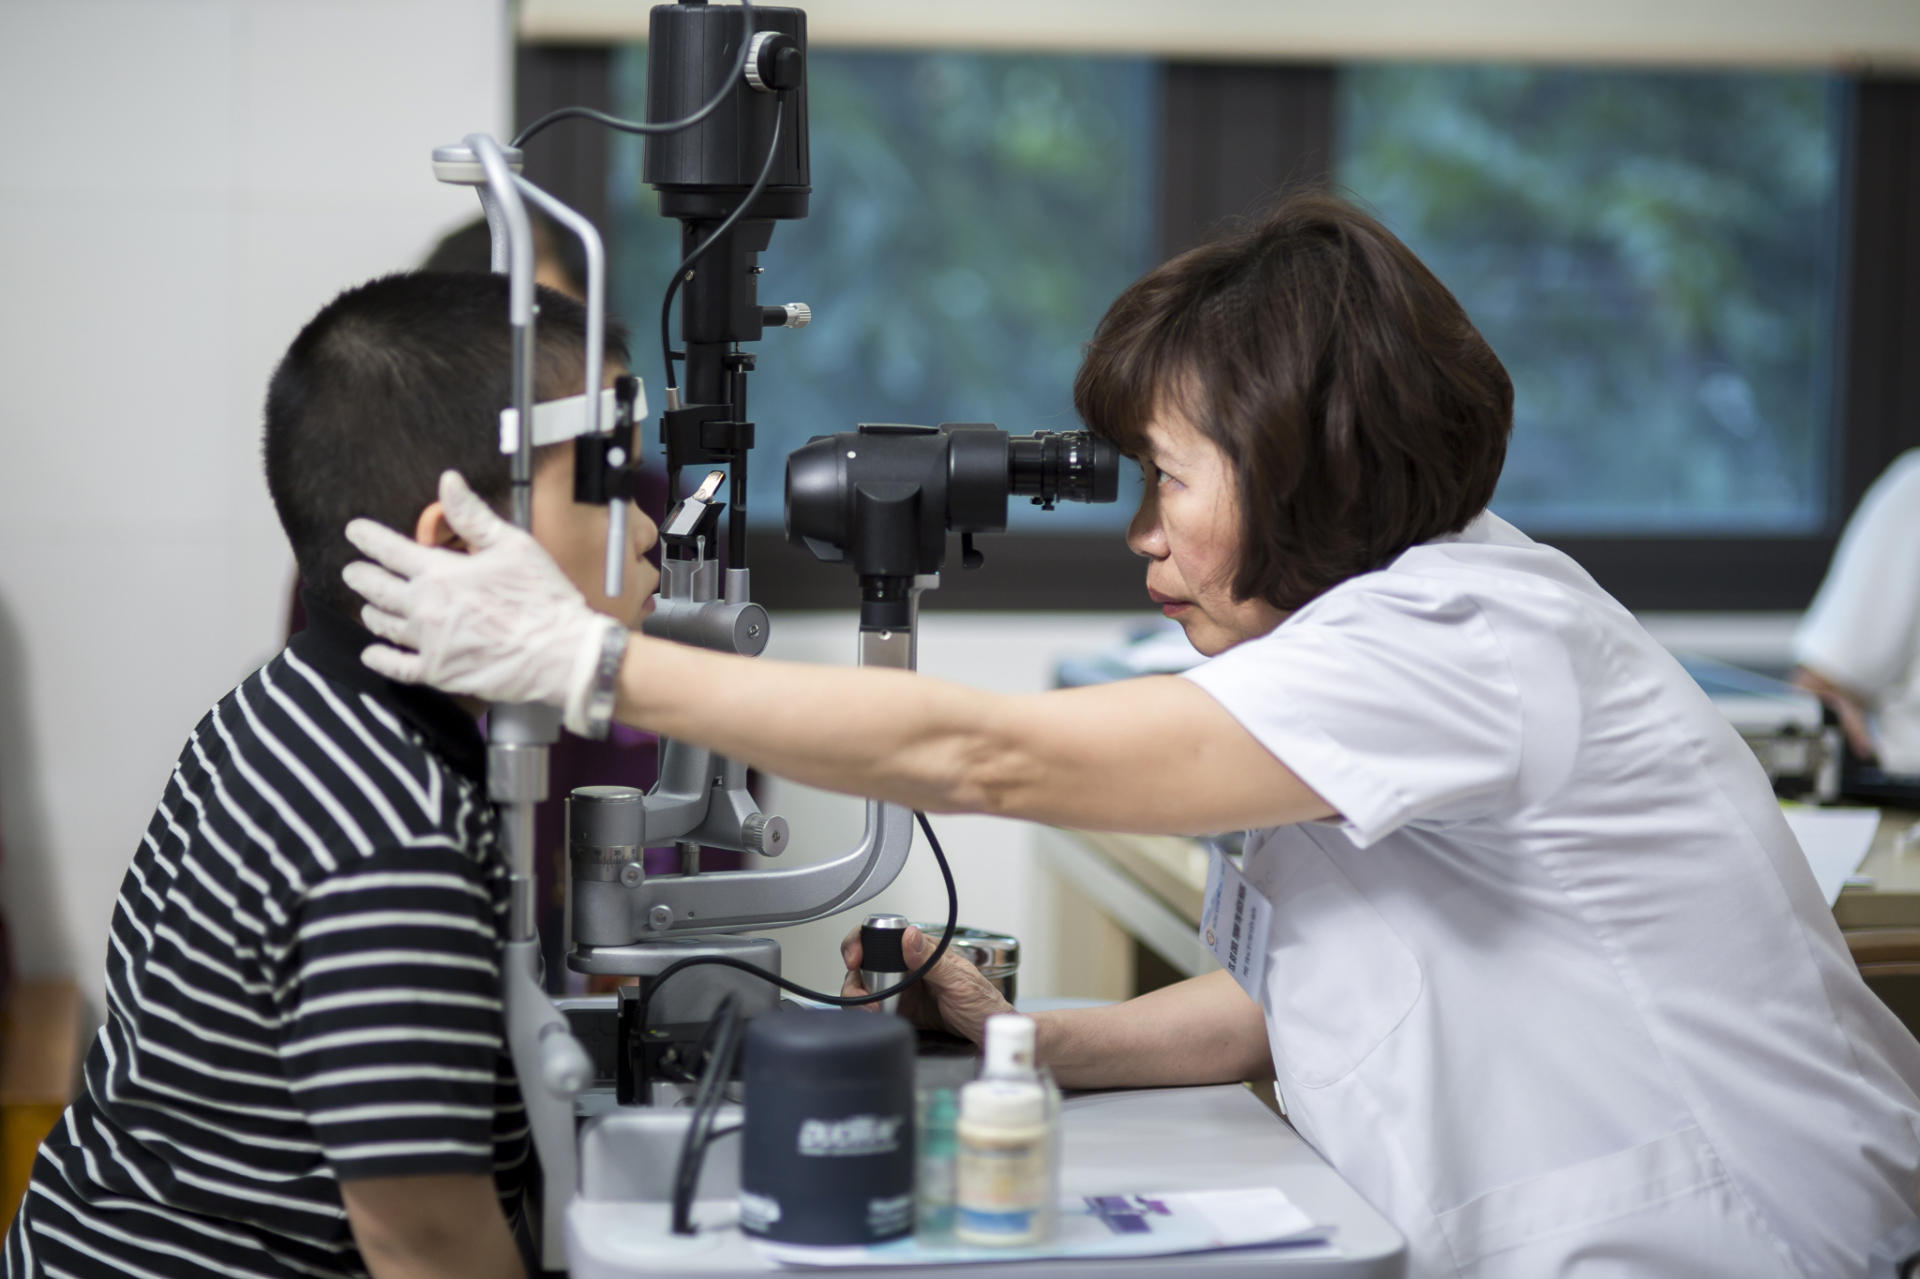 Khi thấy mắt trẻ có những dấu hiệu bất thường, cha mẹ cần đưa con đi khám bác sĩ để được phát hiện và điều trị sớm